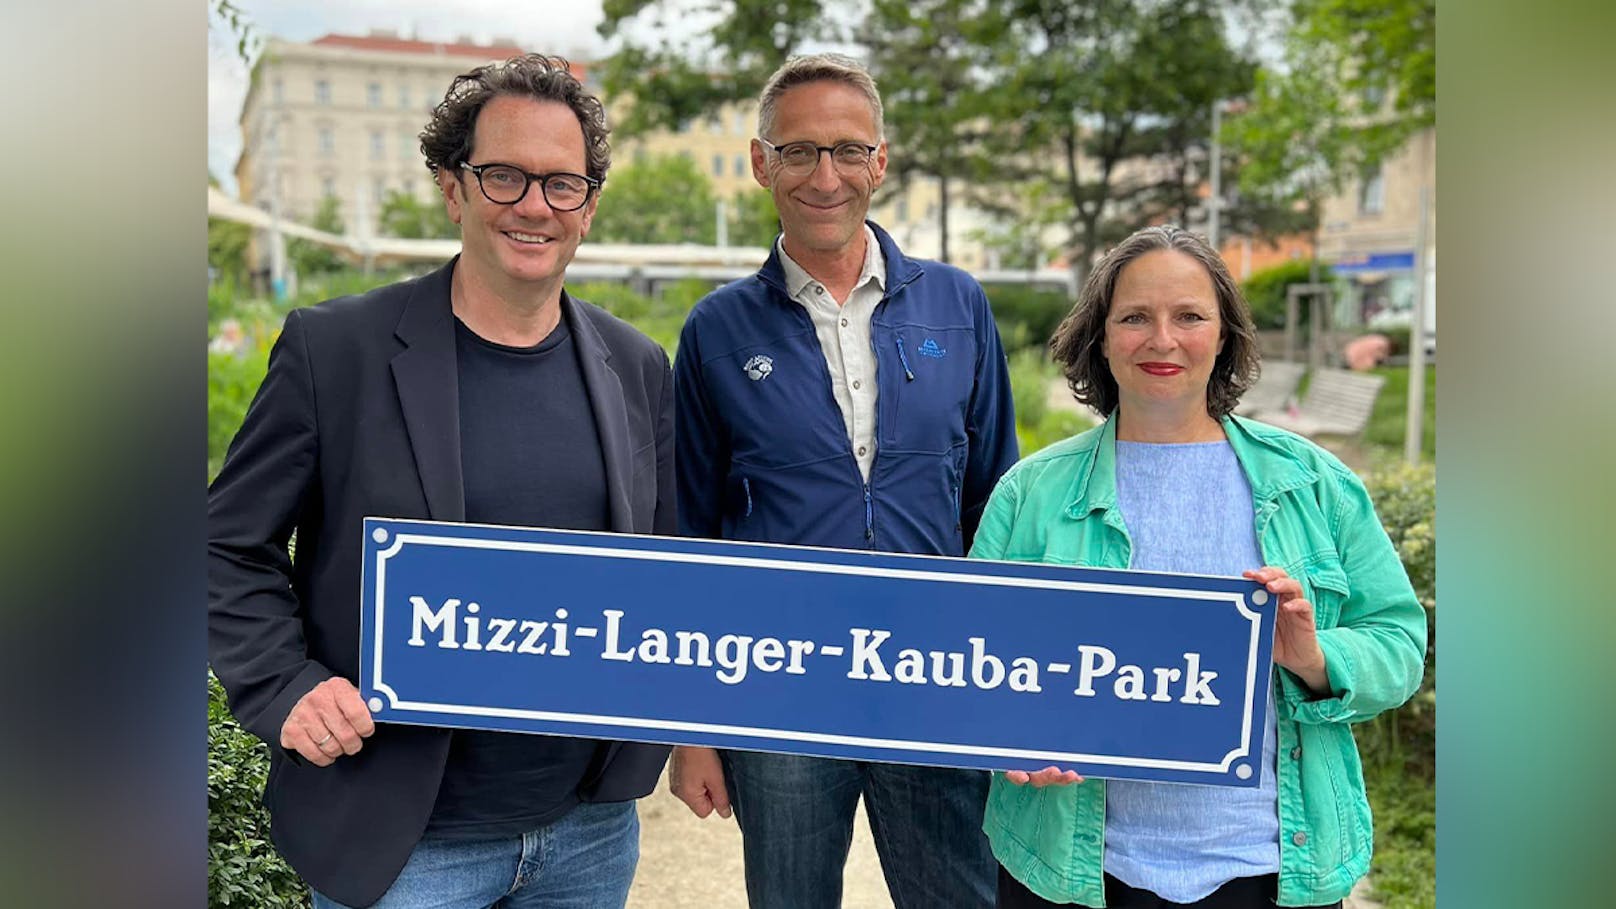 Park in Wien nach "Nazi-Profiteurin" benannt